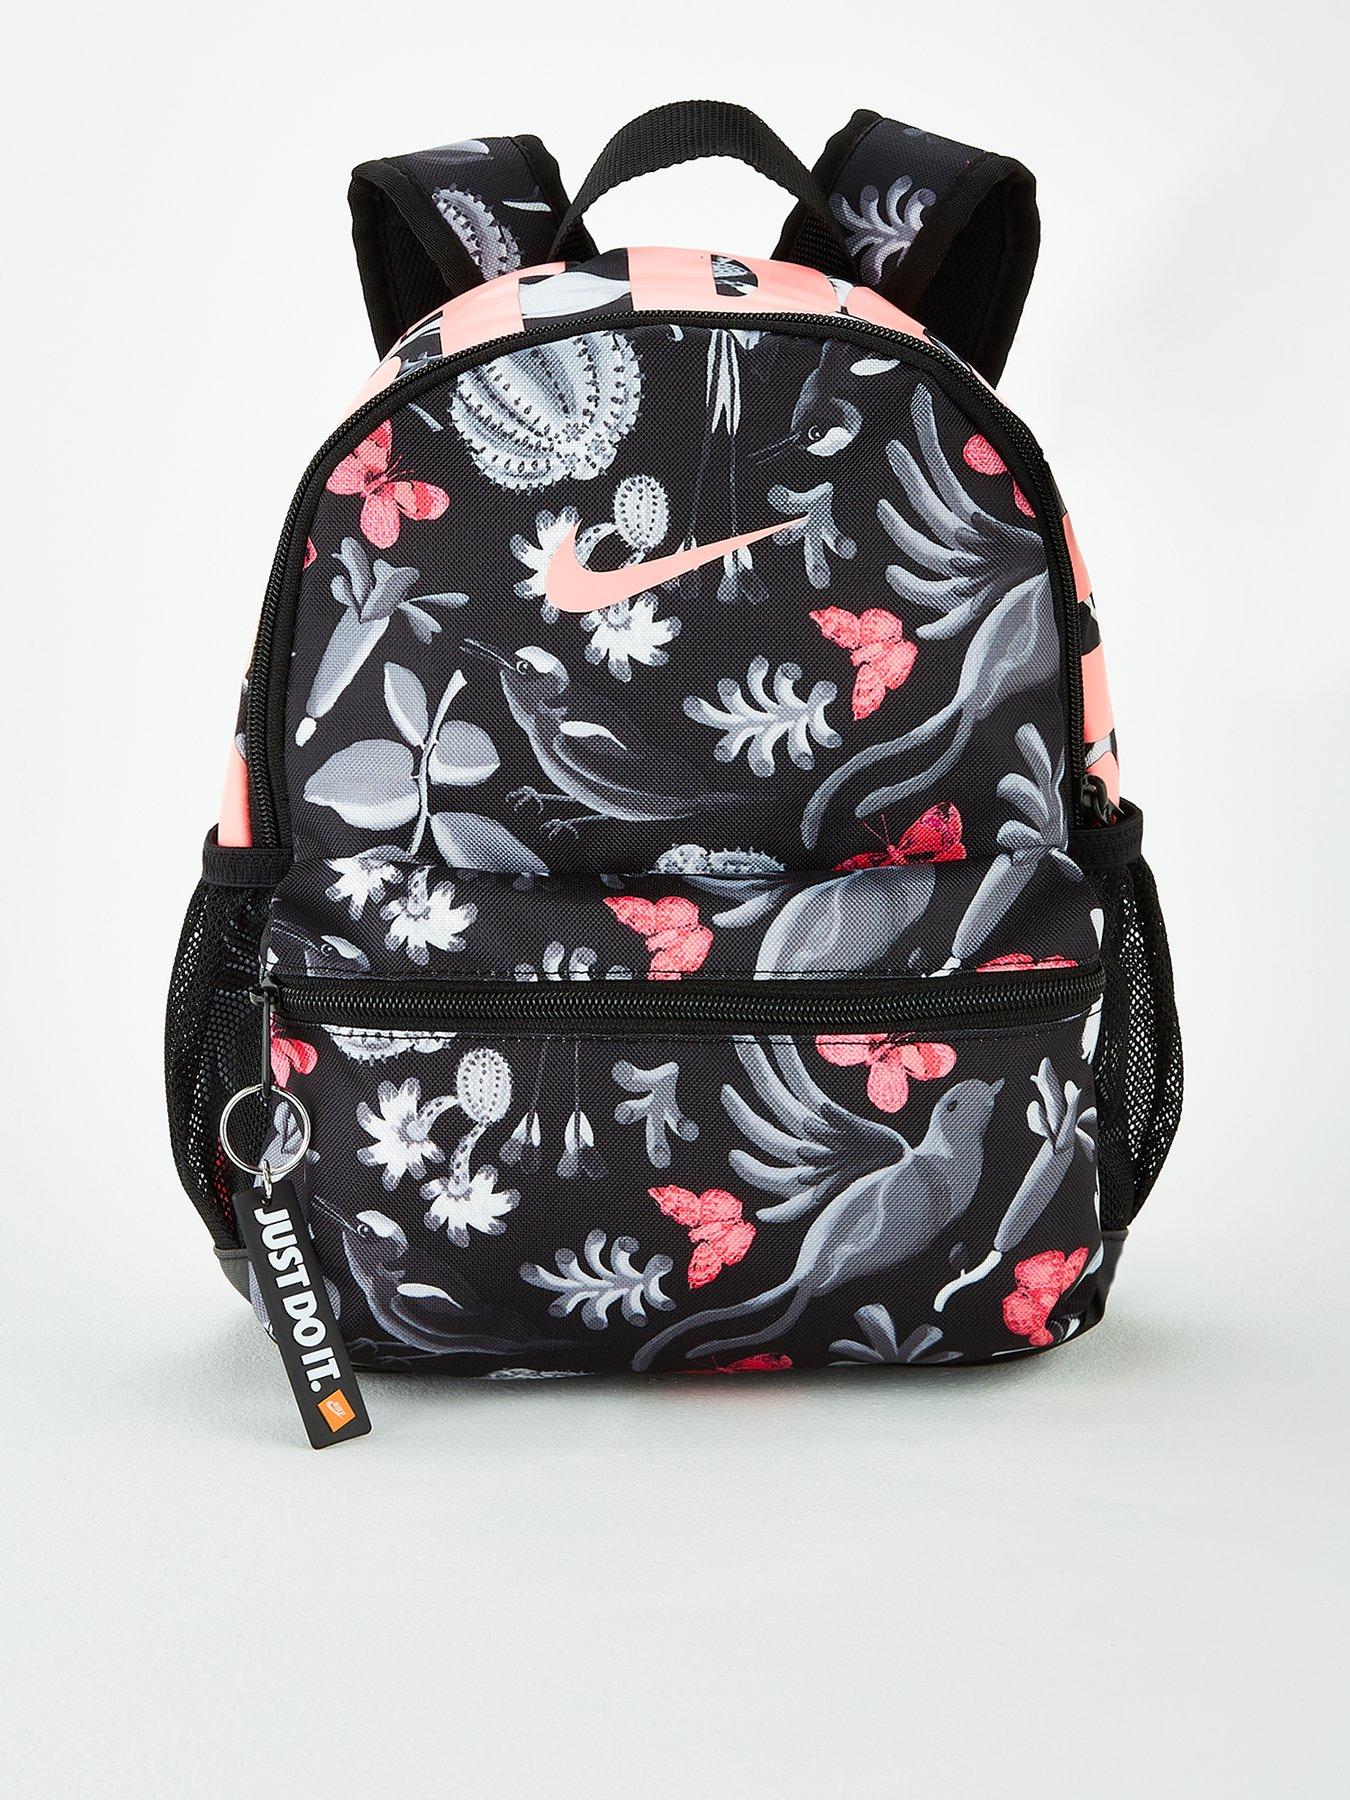 Nike Childrens Brasilia Jdi Mini Printed Backpack Black Pink